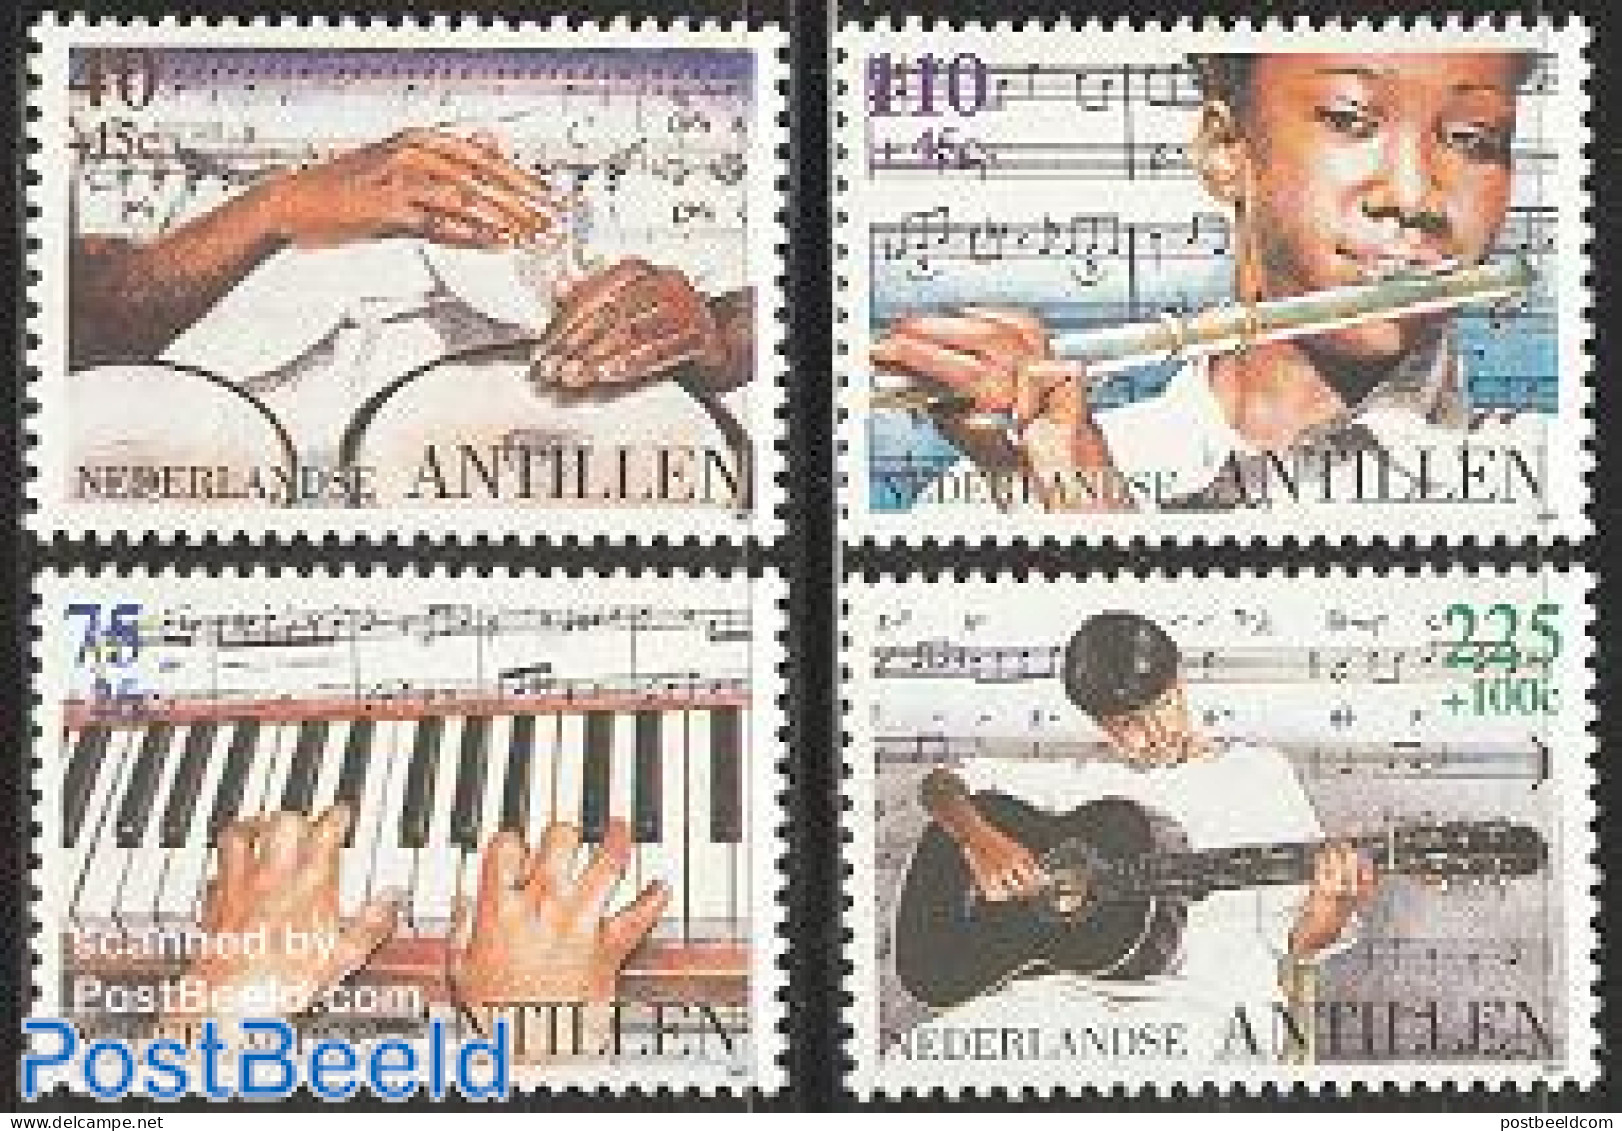 Netherlands Antilles 1997 Child Welfare, Music 4v, Mint NH, Performance Art - Music - Musical Instruments - Staves - Muziek